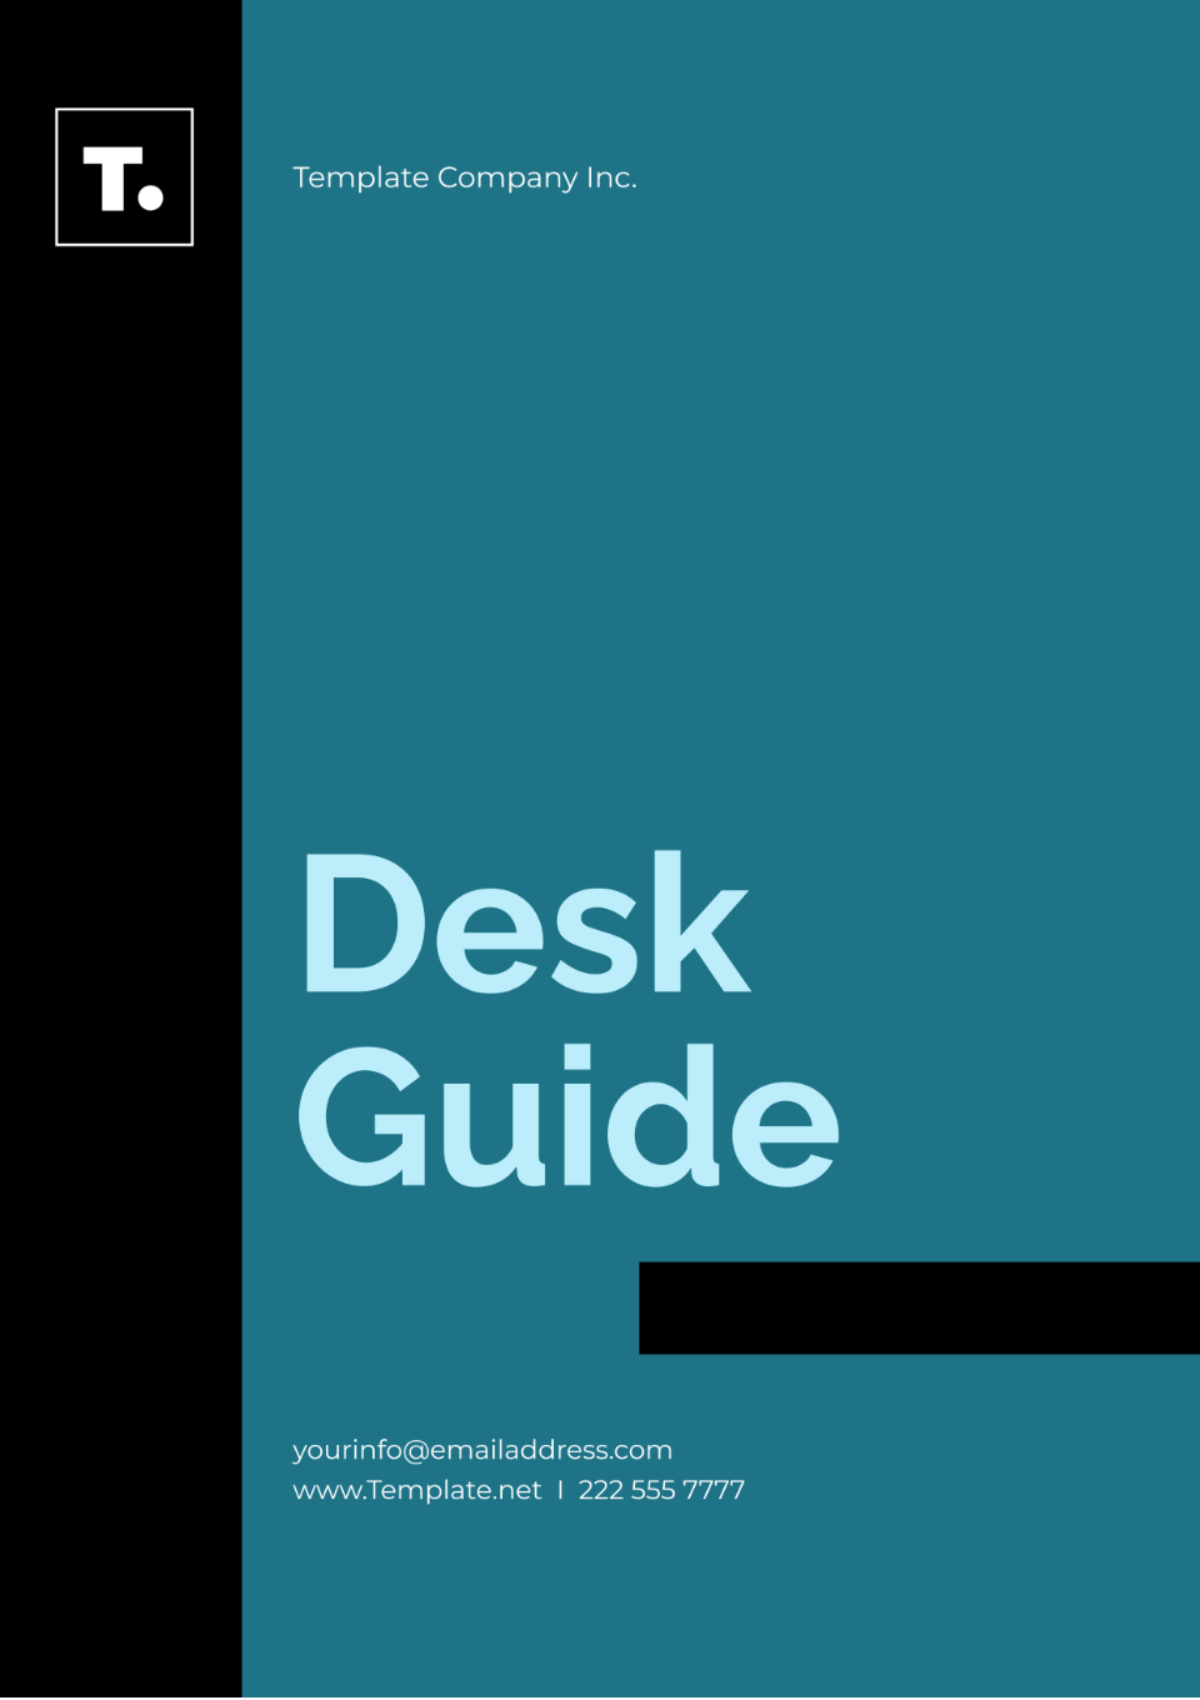 Free Desk Guide Template